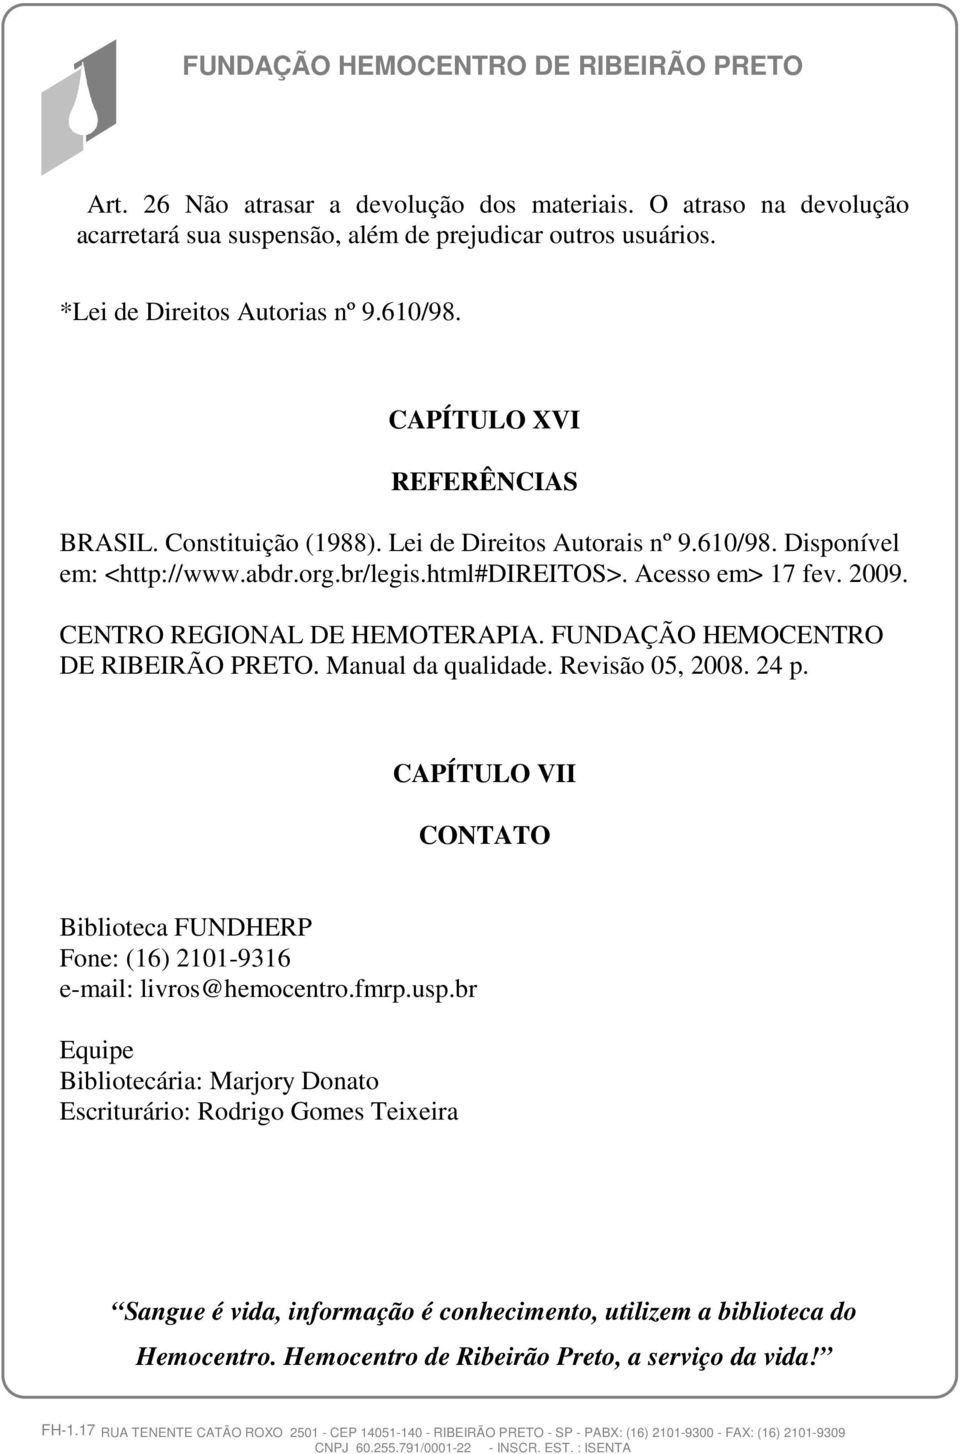 CENTRO REGIONAL DE HEMOTERAPIA. FUNDAÇÃO HEMOCENTRO DE RIBEIRÃO PRETO. Manual da qualidade. Revisão 05, 2008. 24 p.